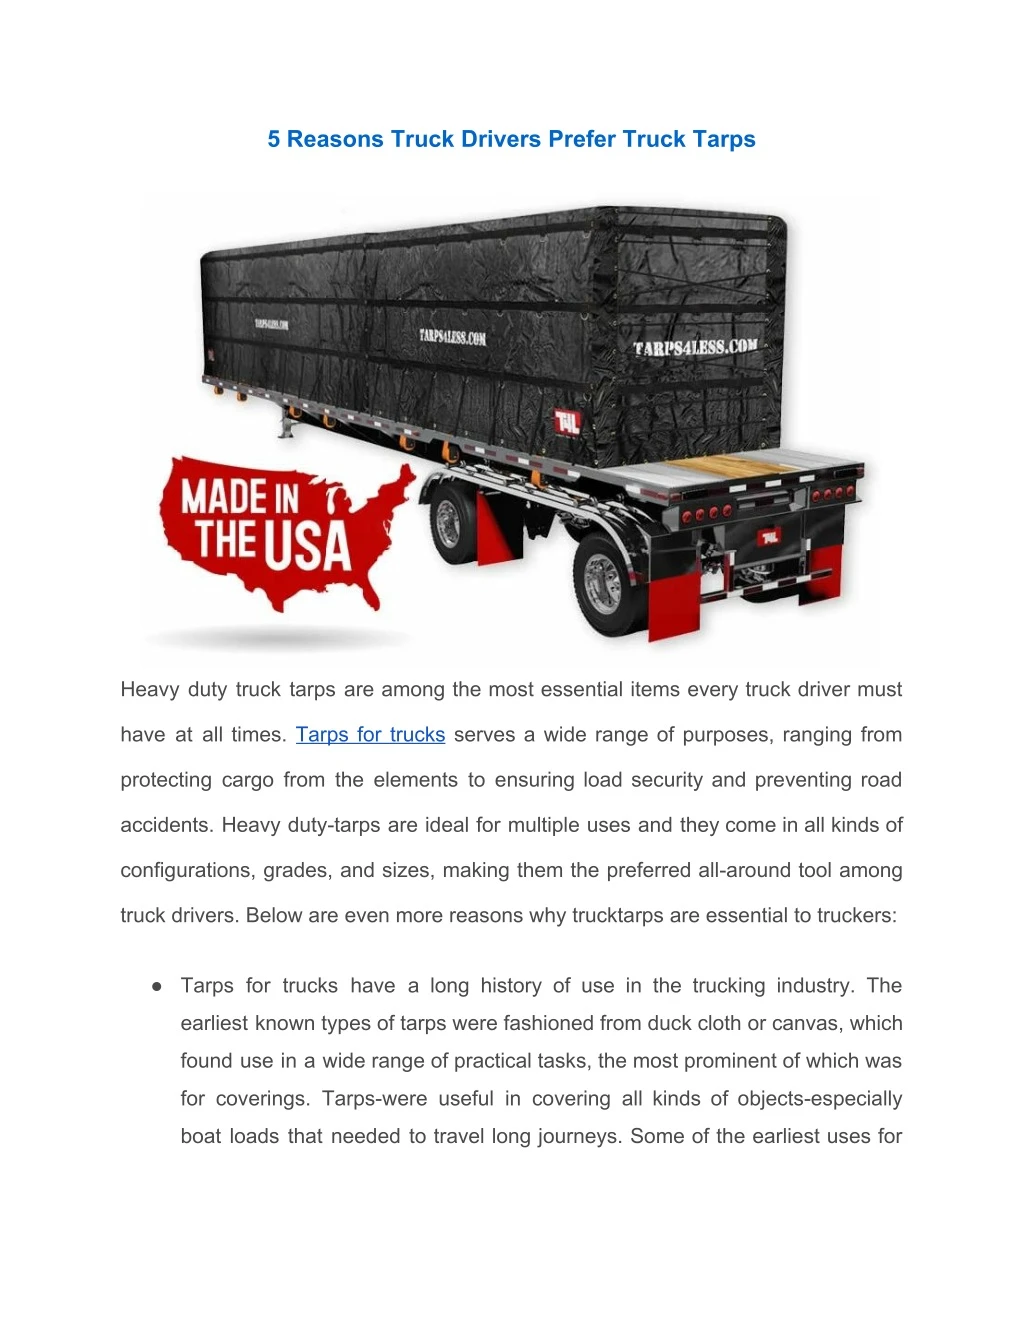 5 reasons truck drivers prefer truck tarps